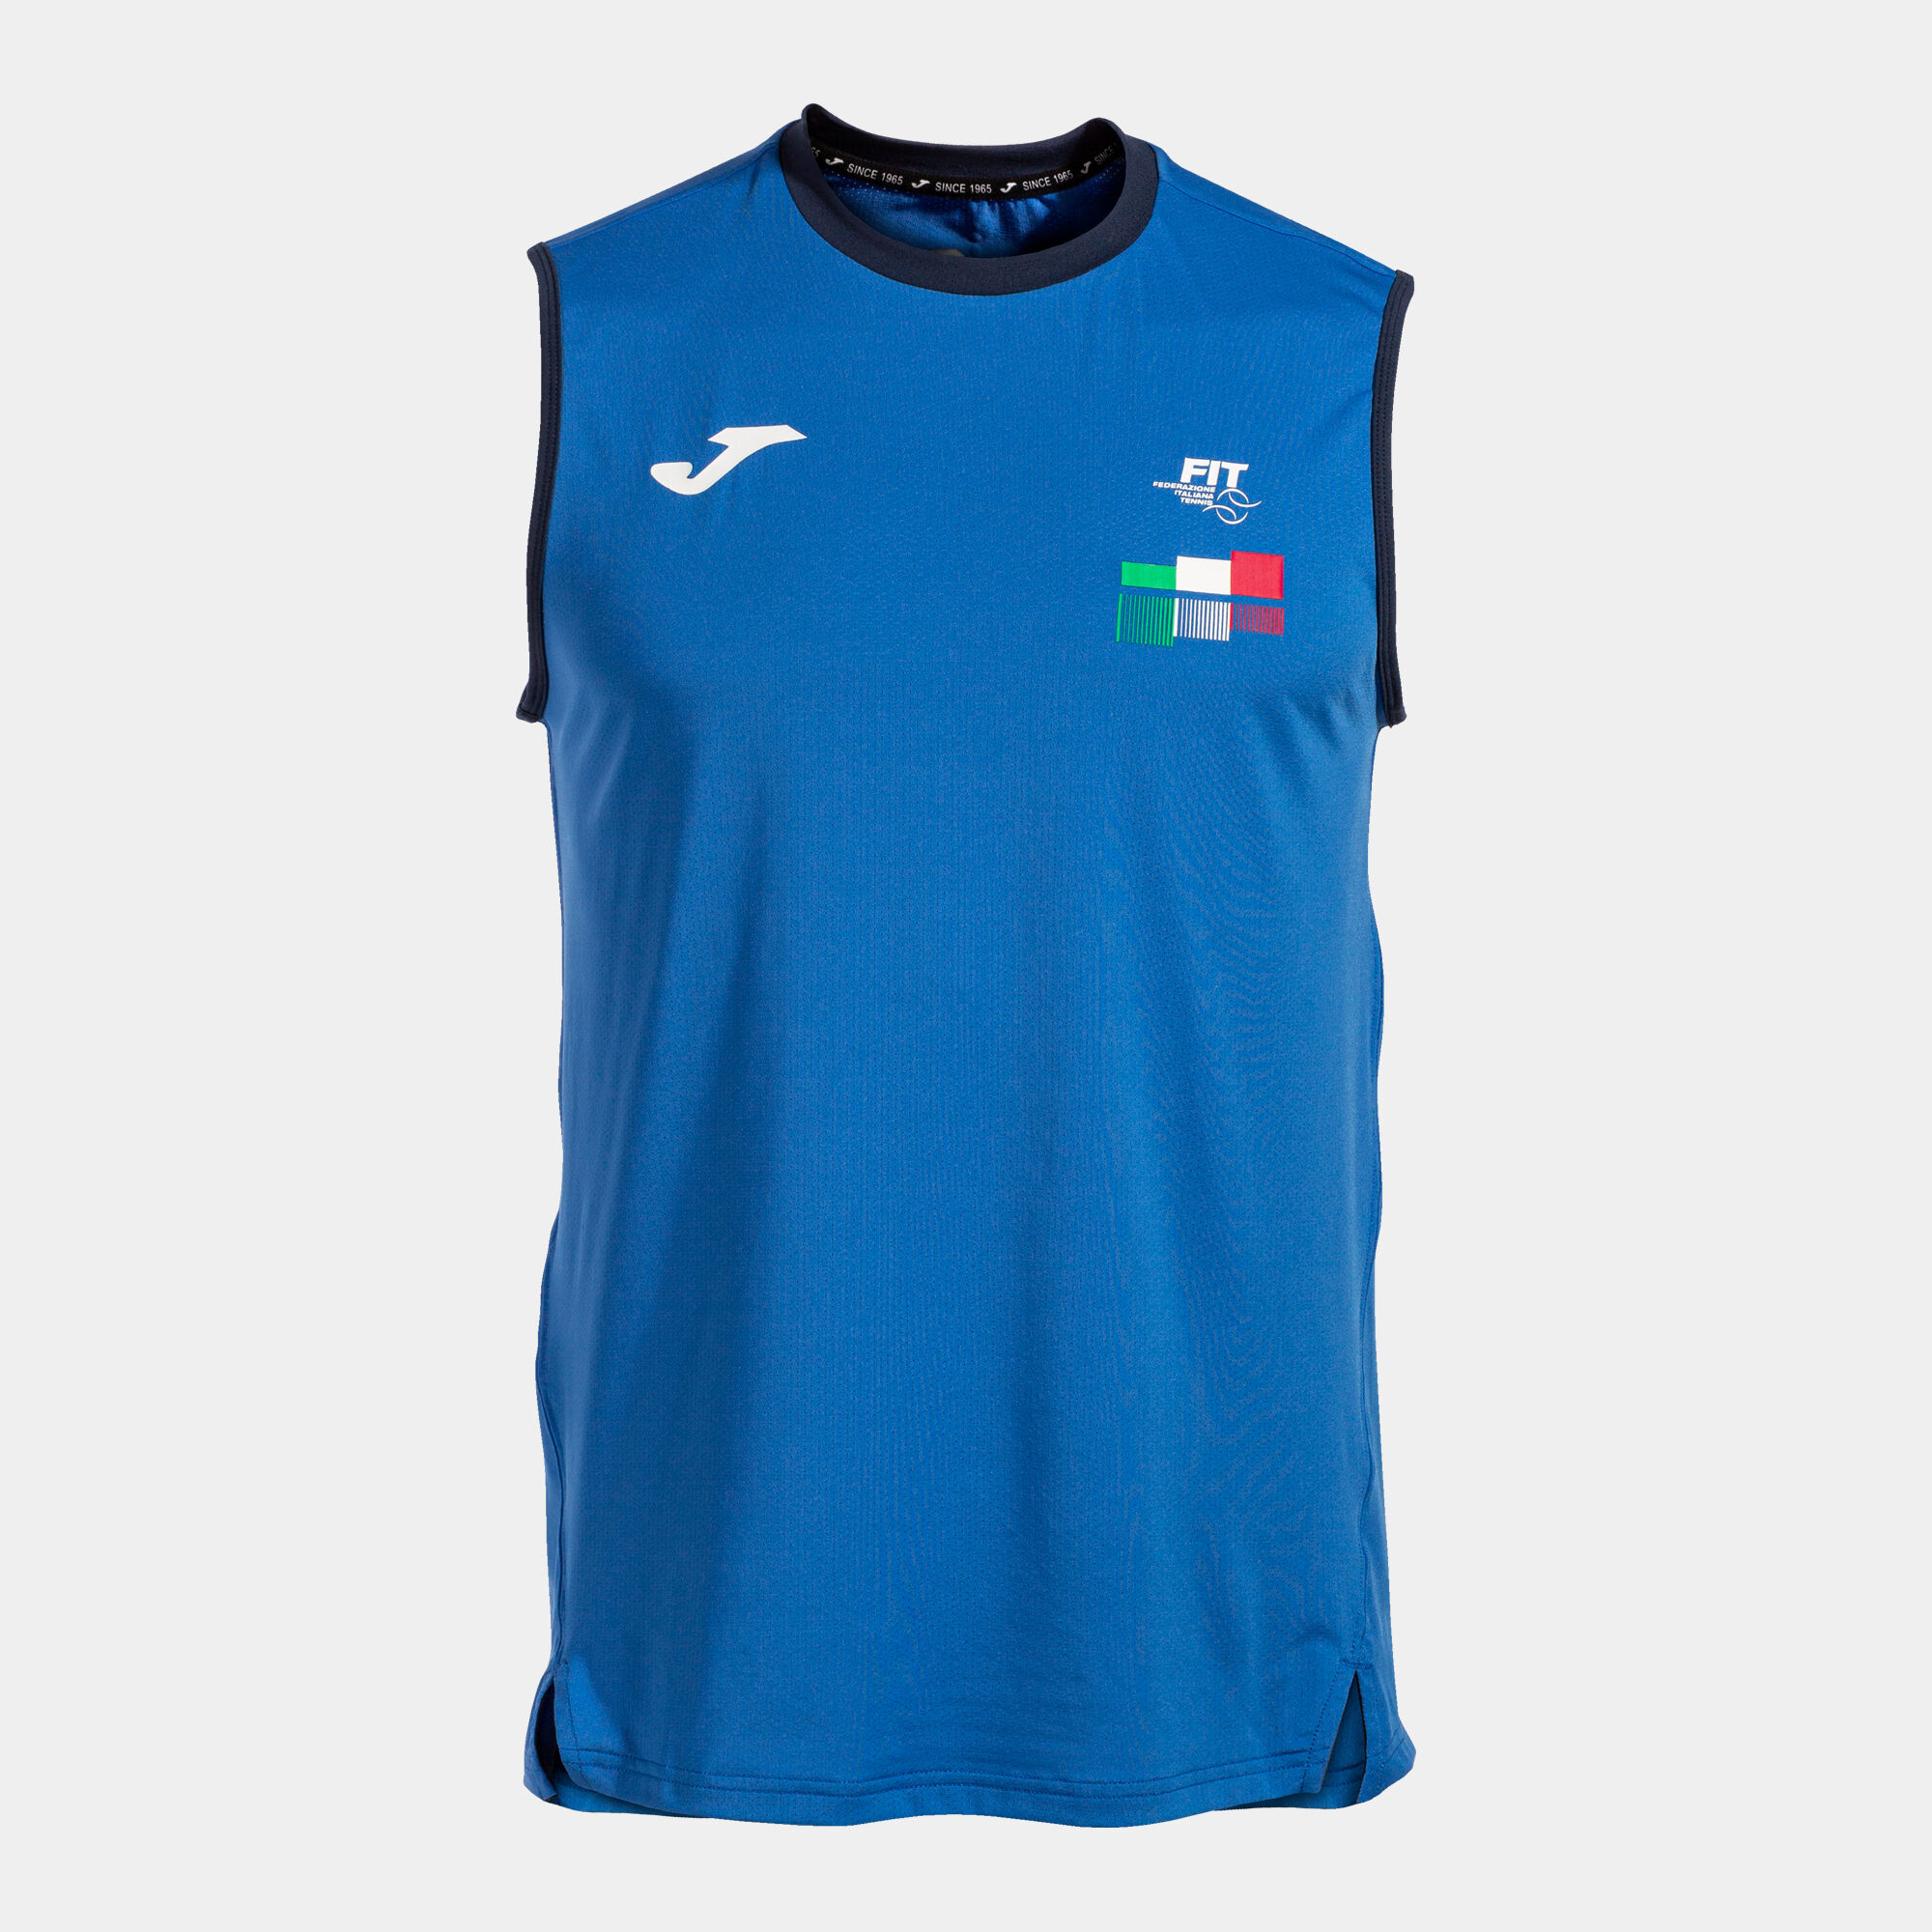 Shirt s/m Italienischer Verband Für Tennis Und Padel